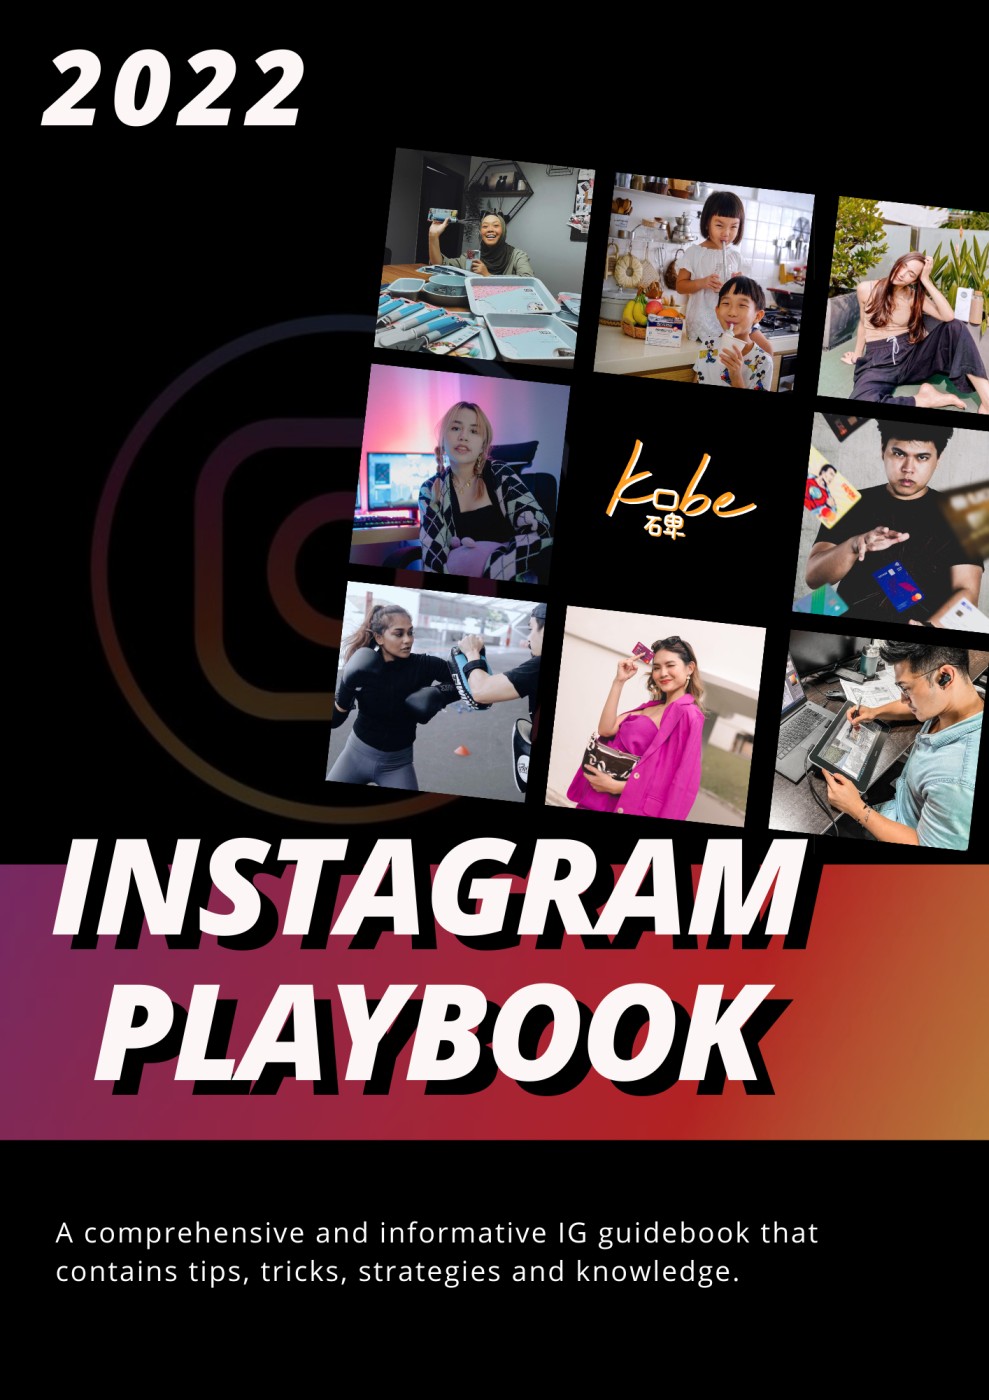 Instagram playbook 2022, Instagram strategies 2022